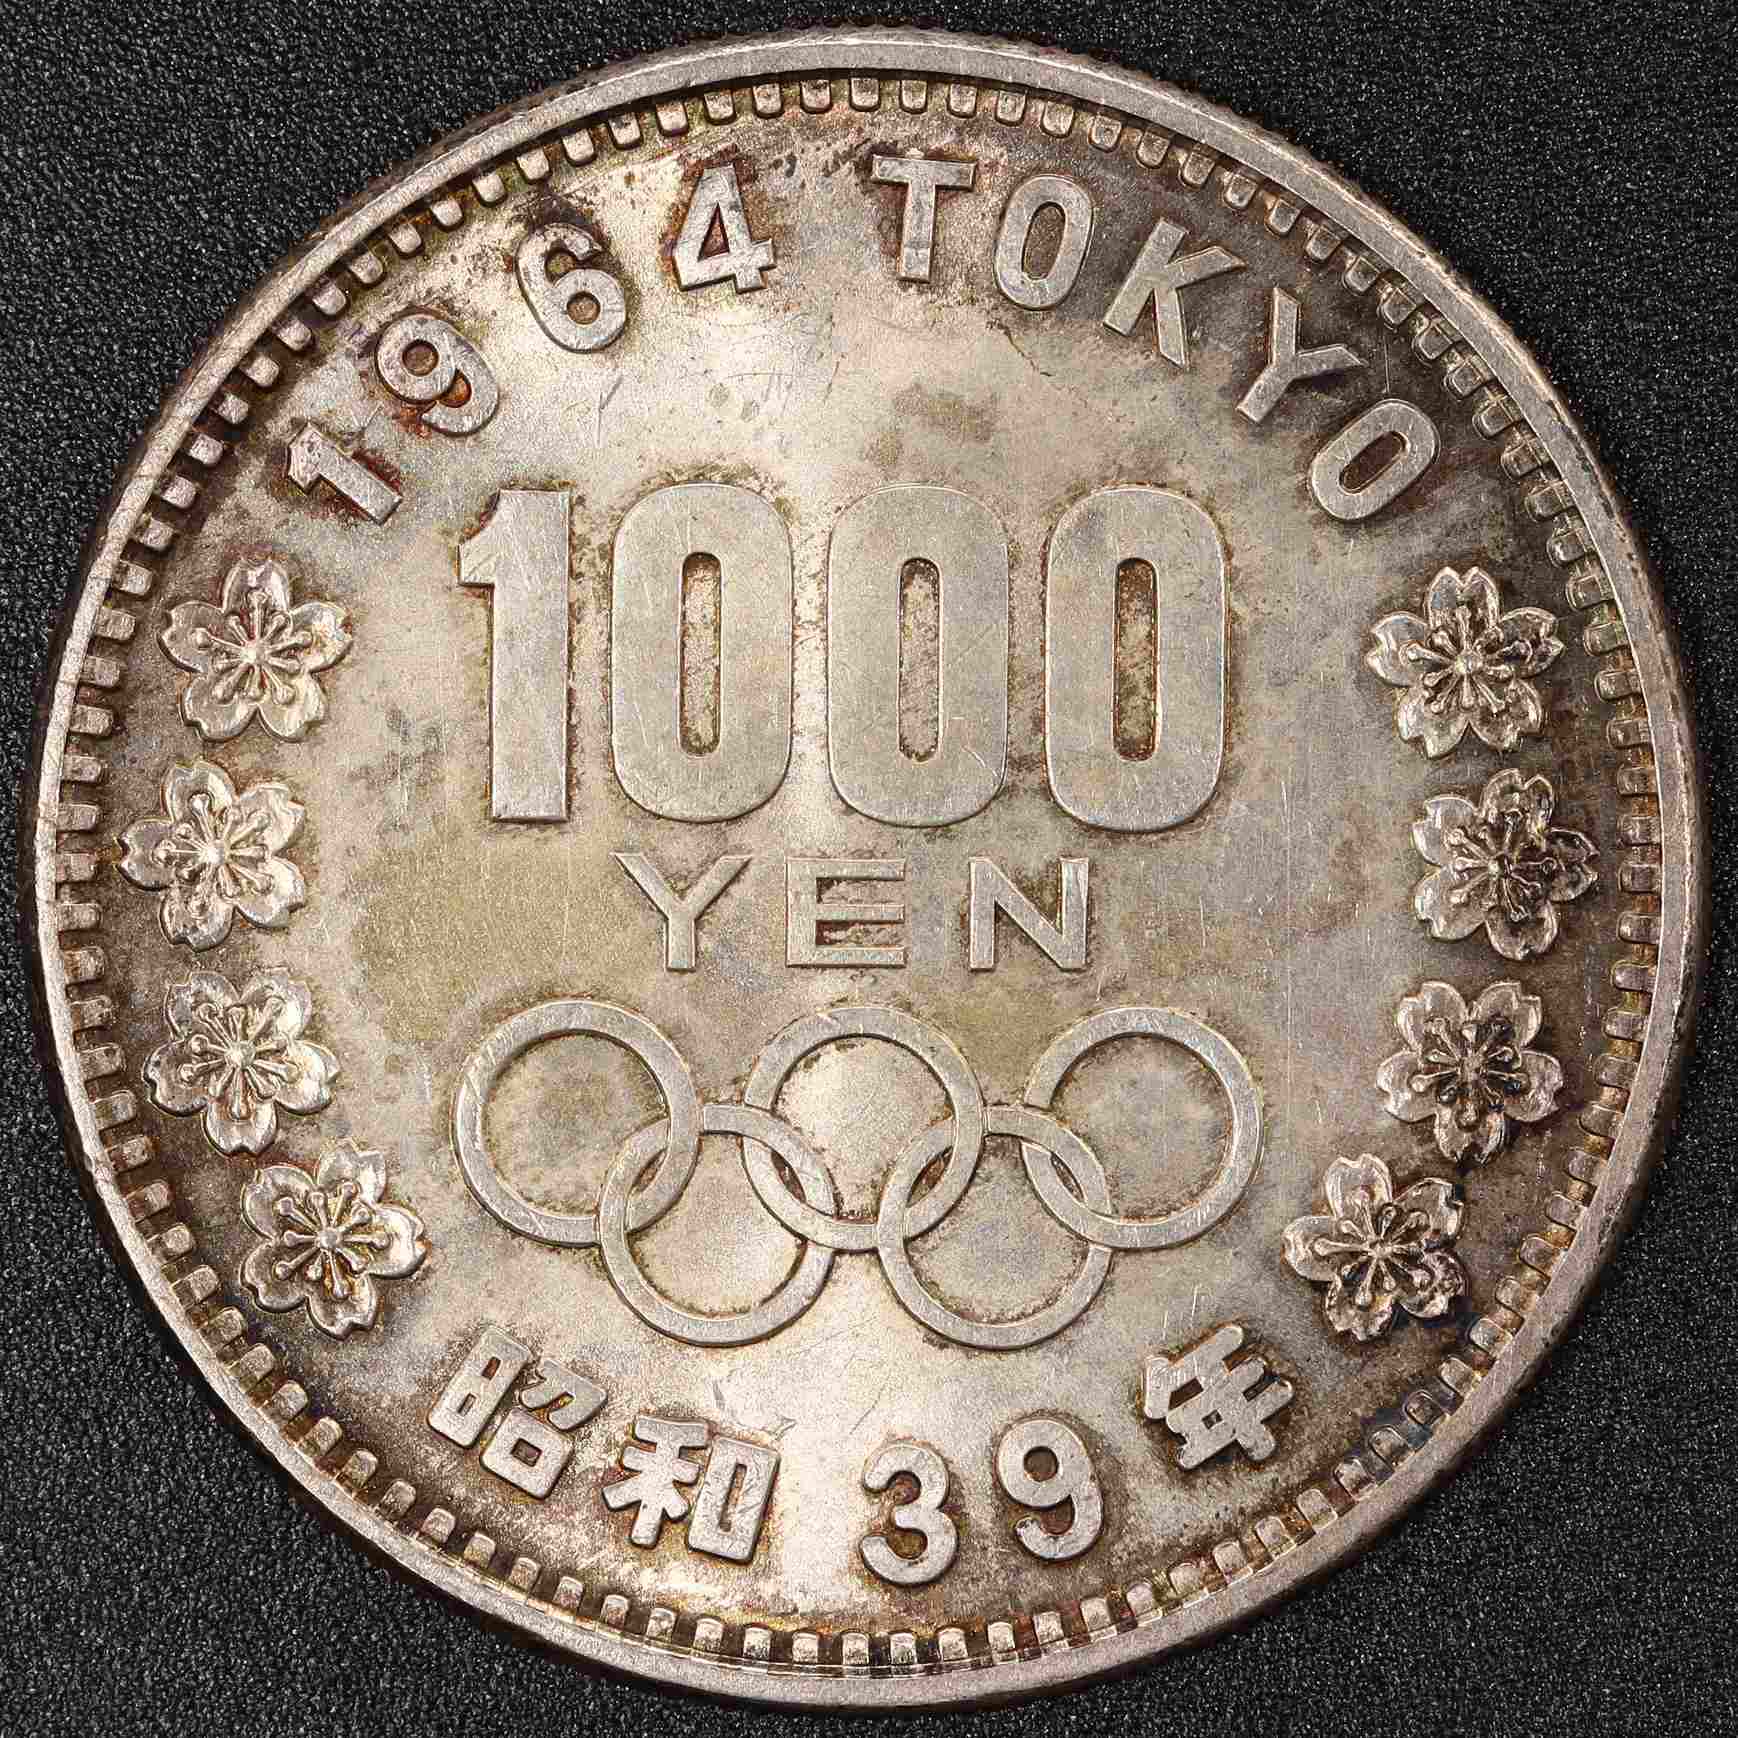 1964年 東京オリンピック記念1000円銀貨 10枚セット | ミスターコインズ